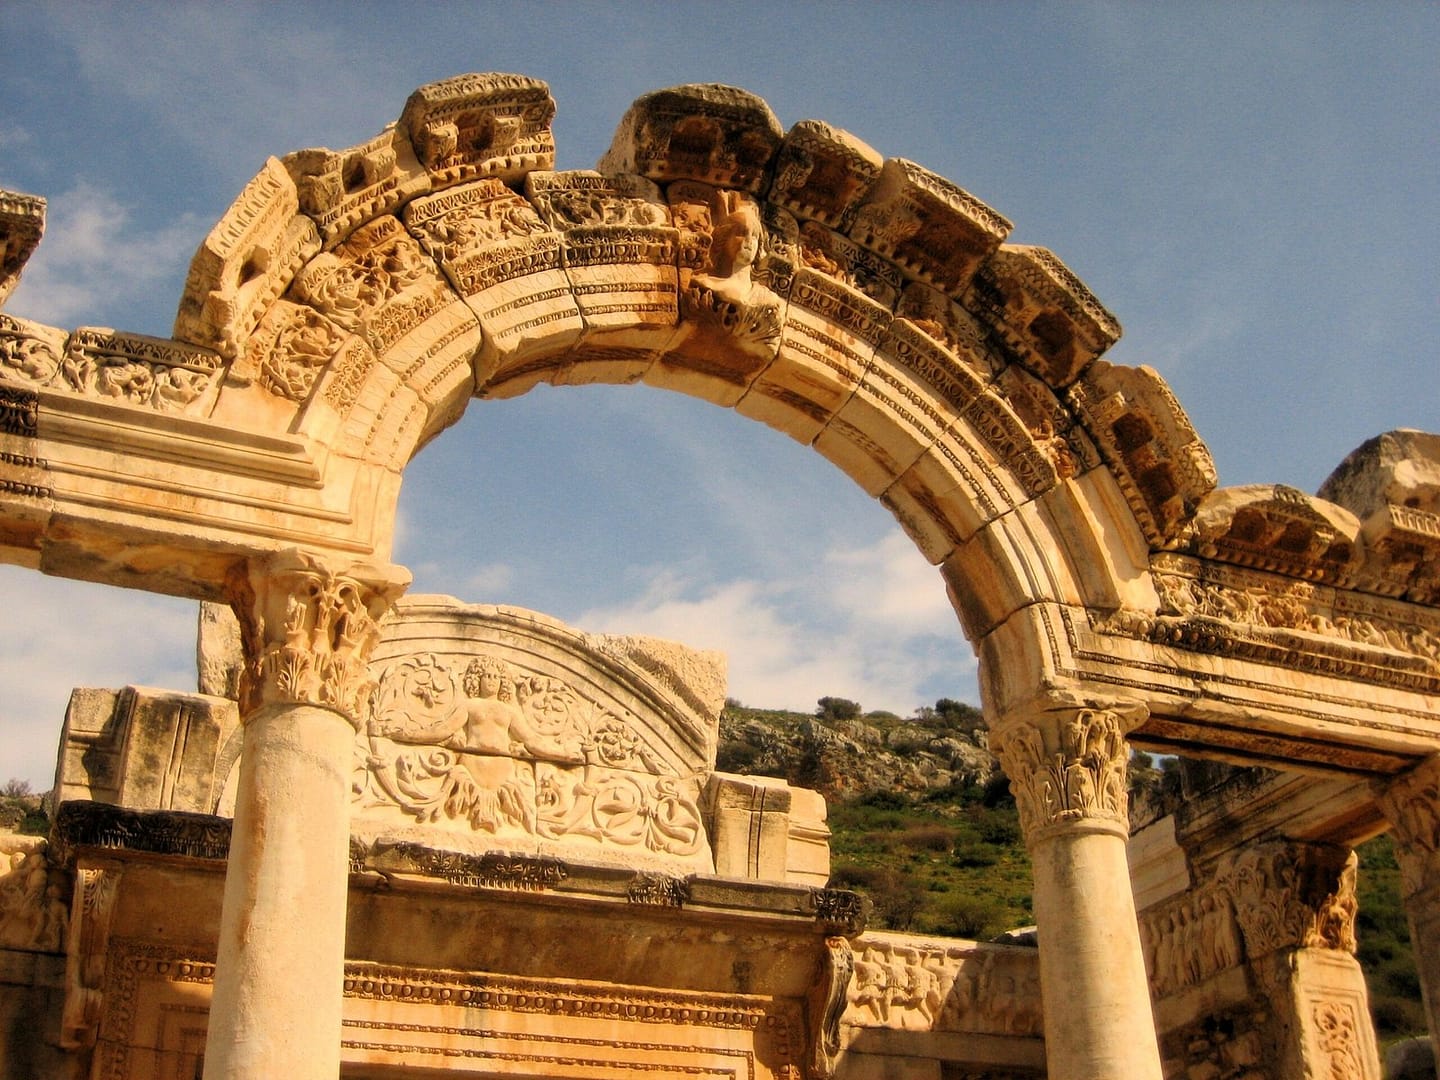 Ephesus Archaeological site - Highlights of Highlights of TÜRKIYE TOUR 